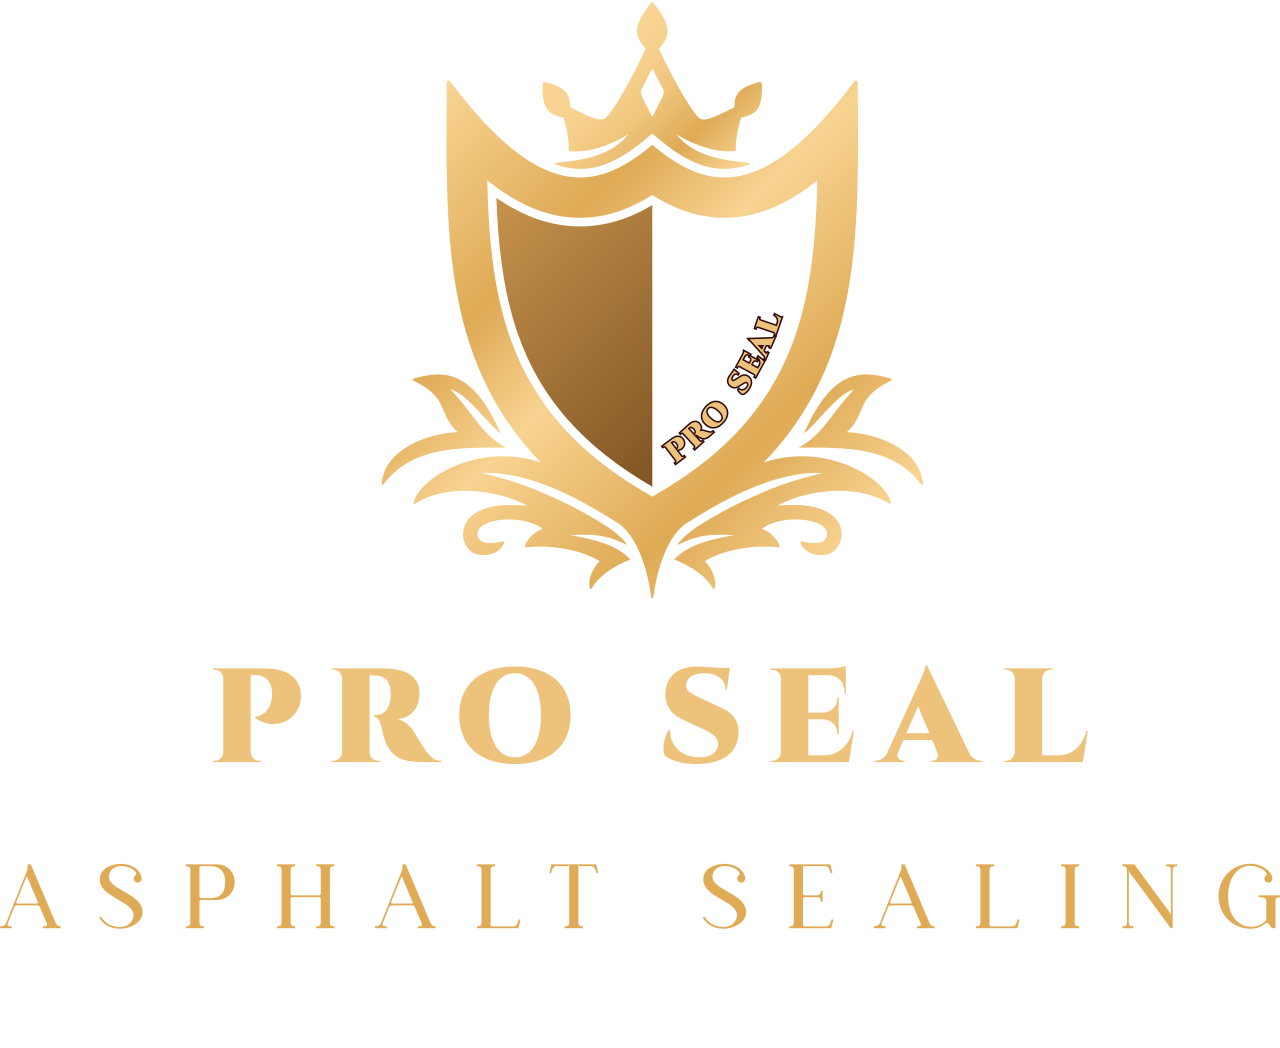 Pro Seal 's logo